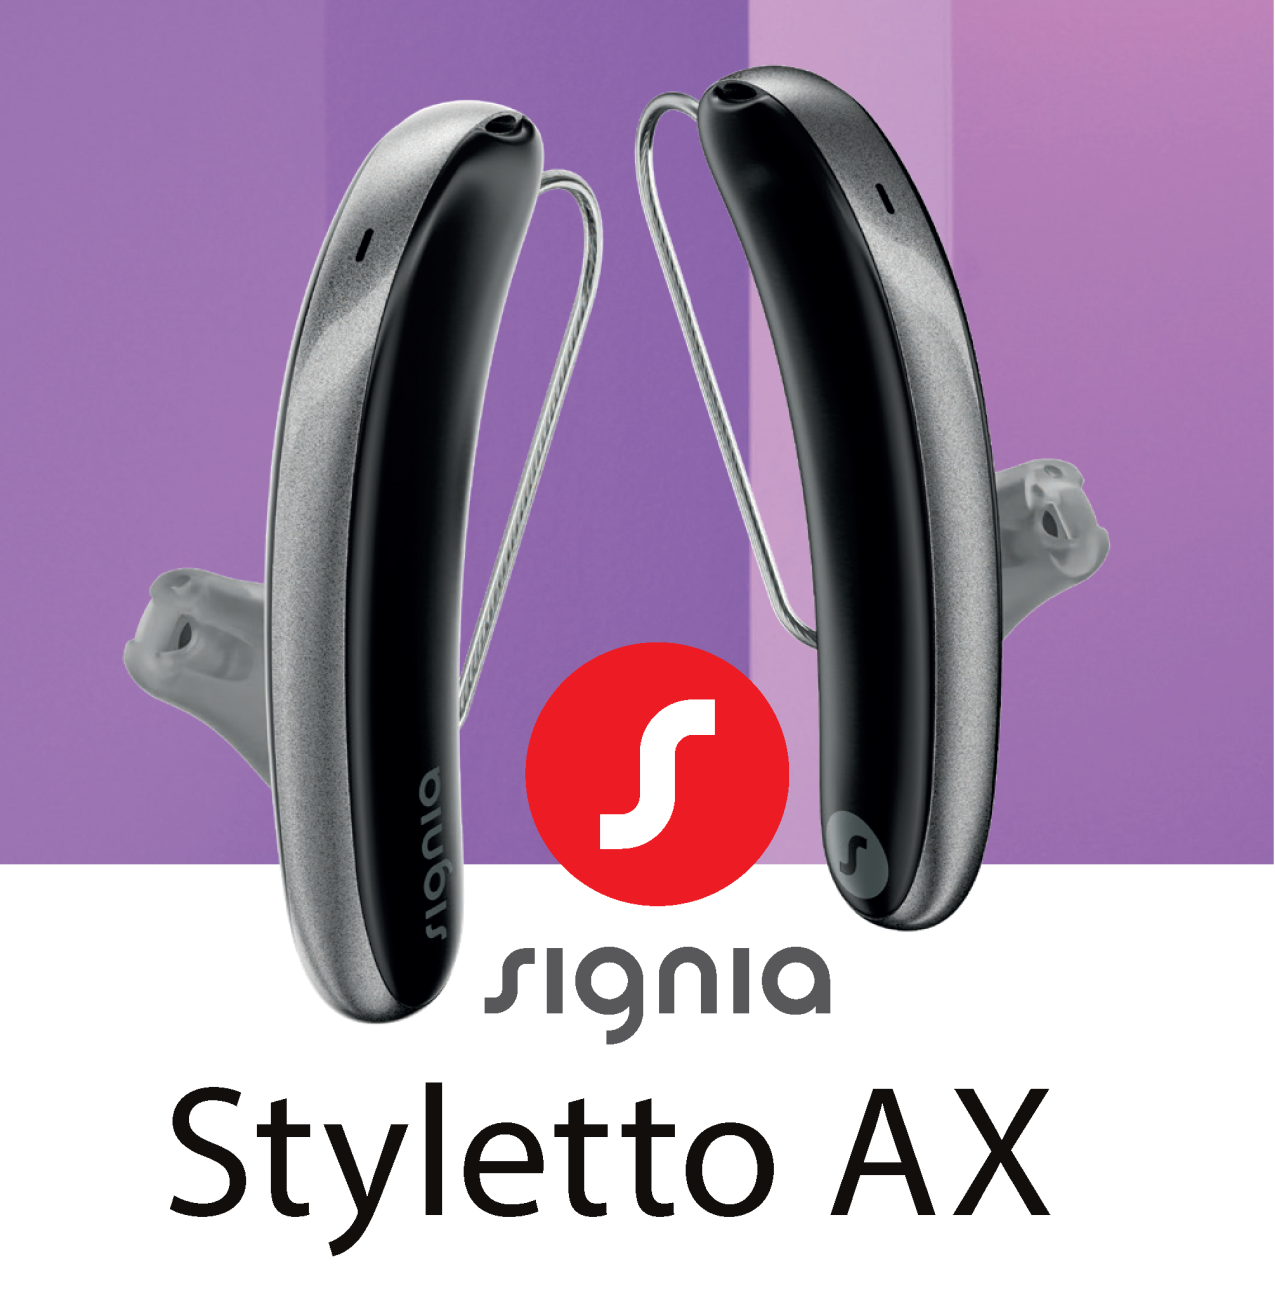 Hörgerät Styletto AX von Signia